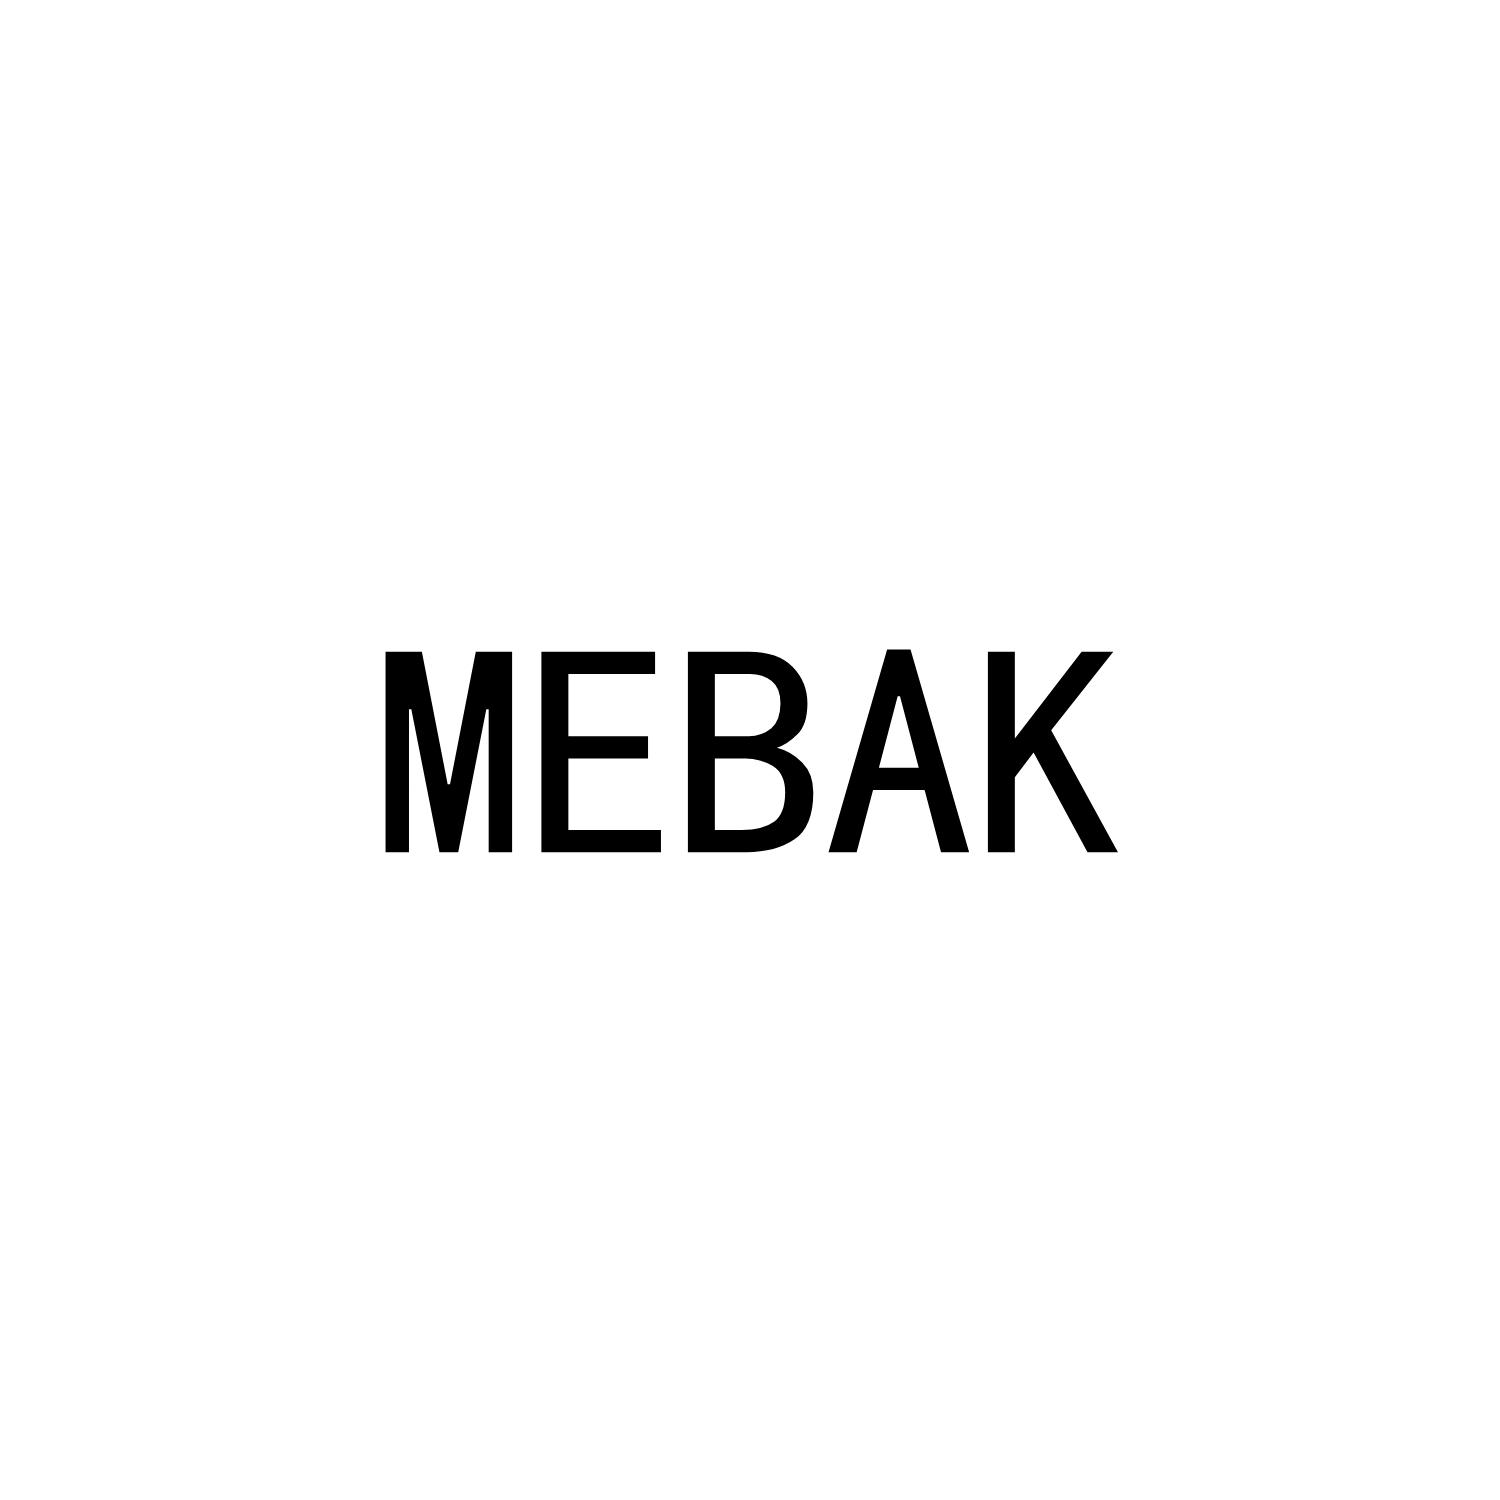 MEBAK